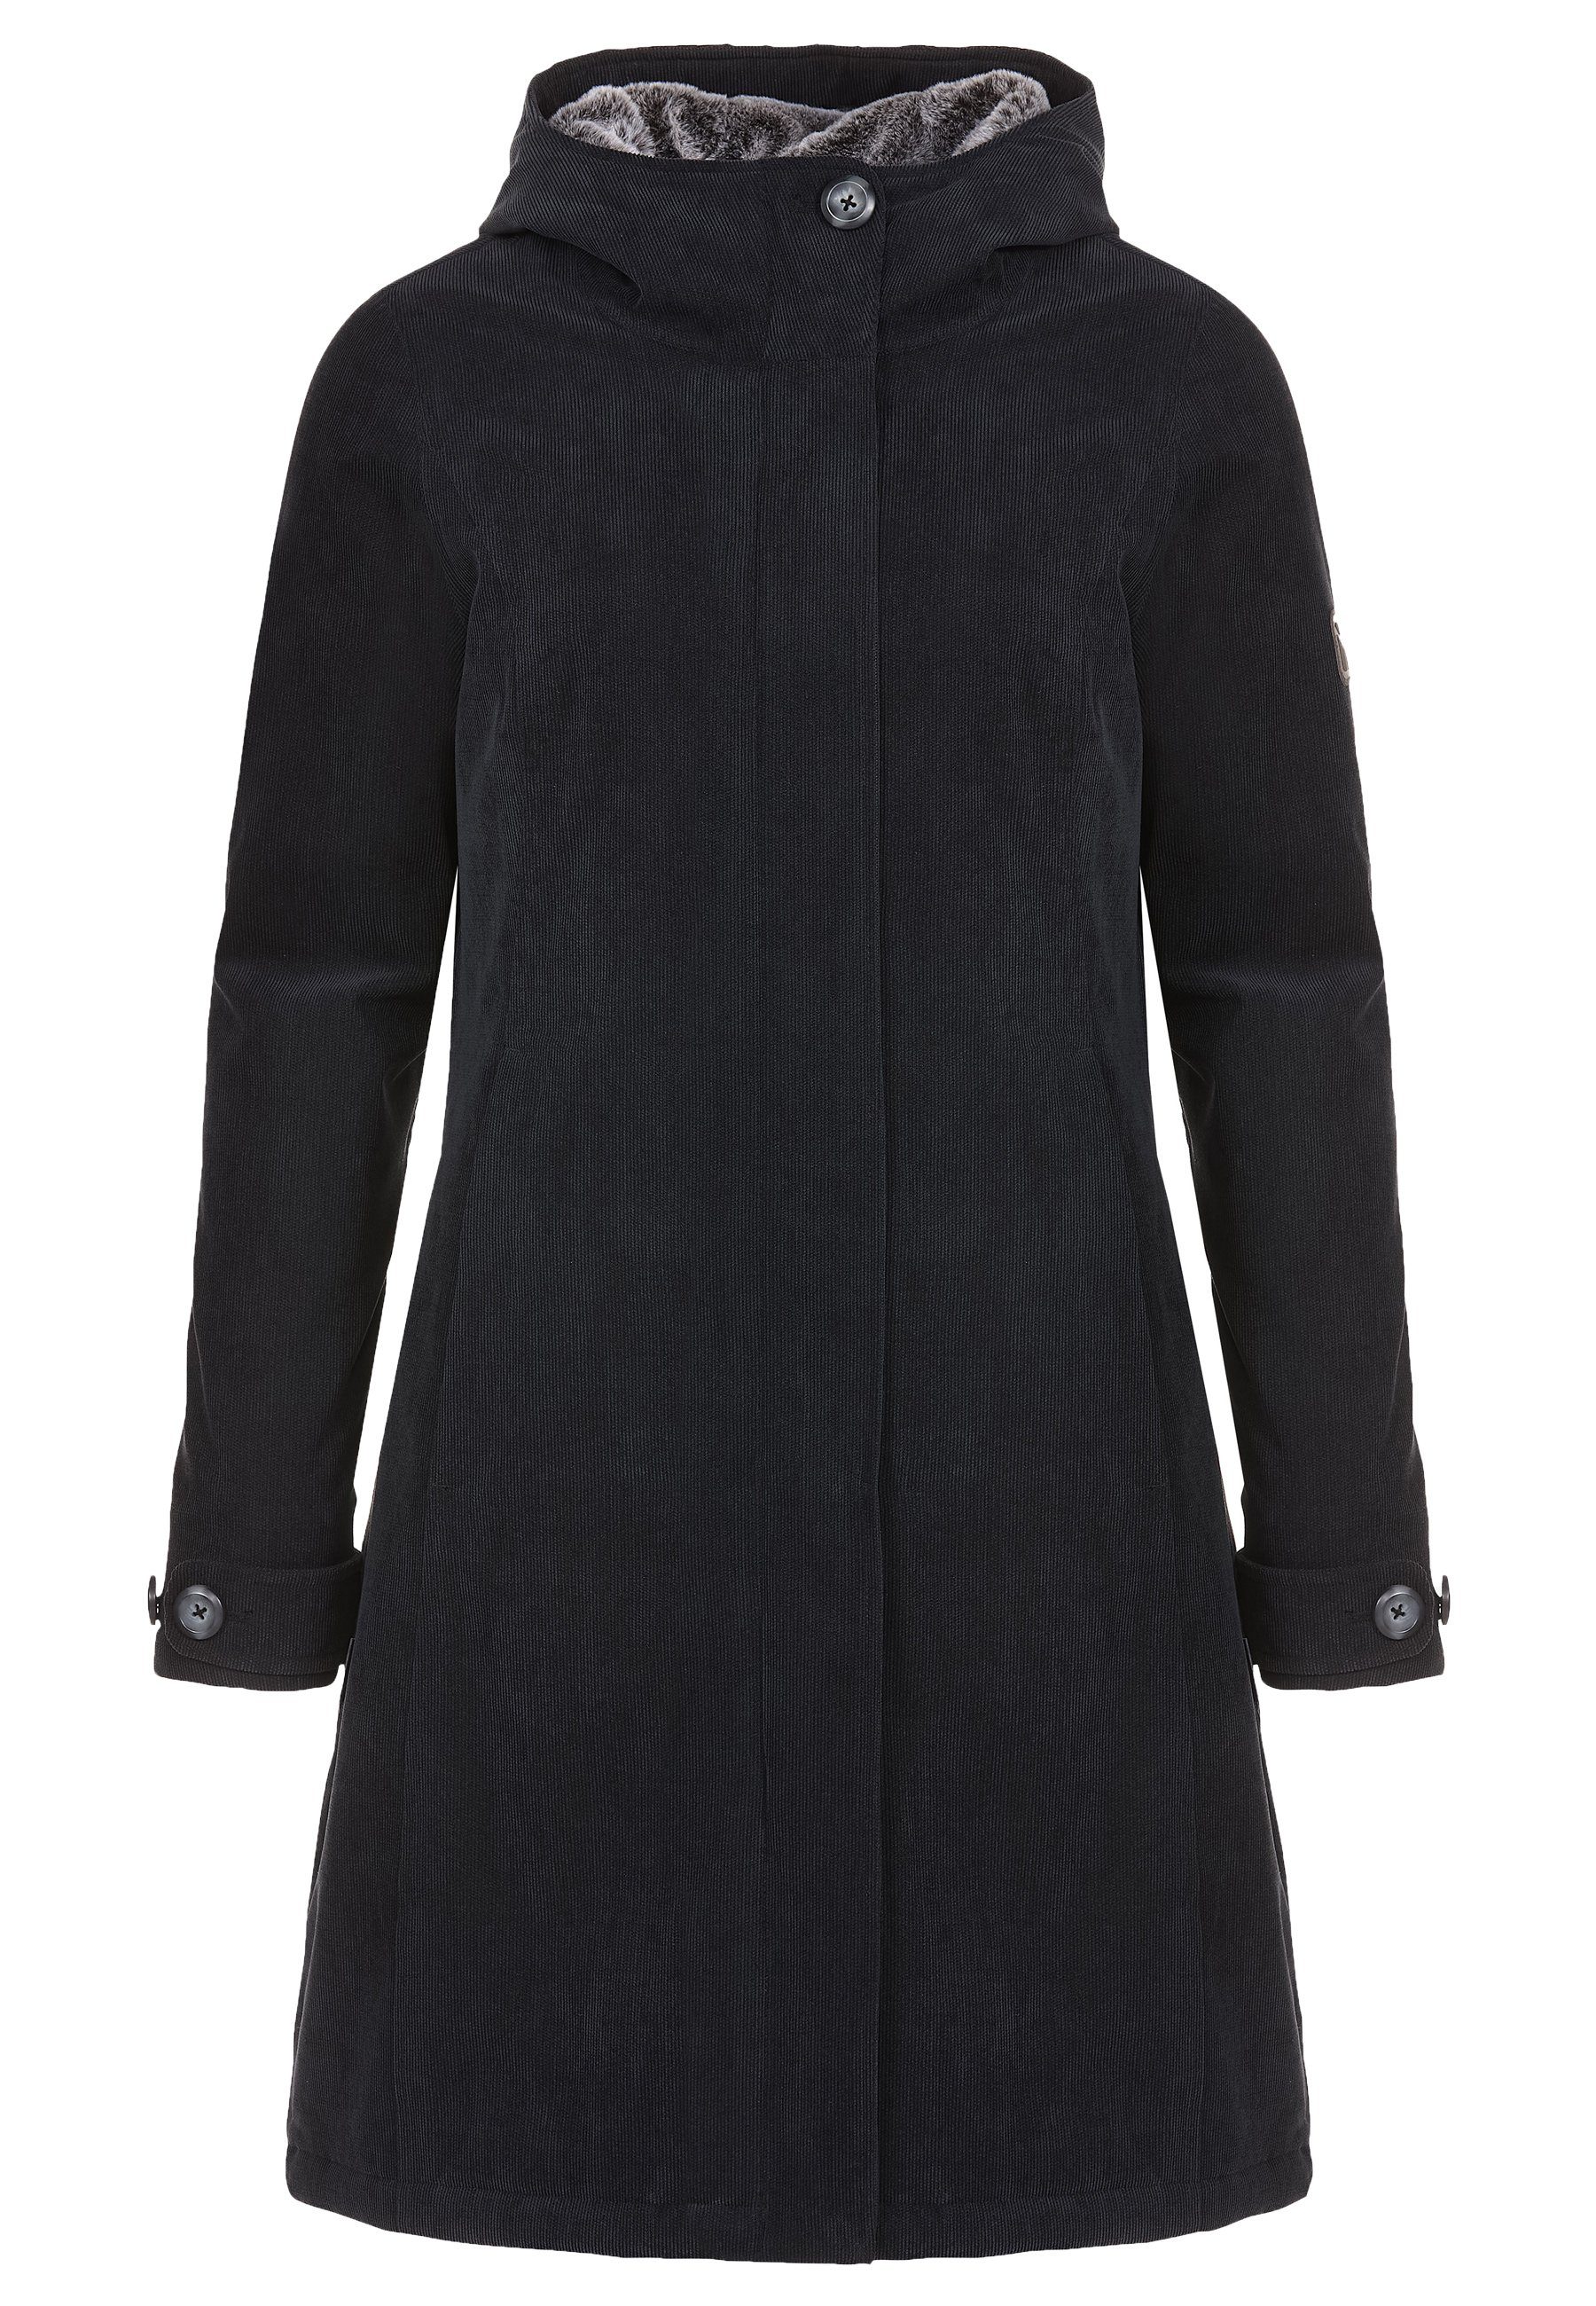 Elkline Winterjacke Glasgow Cord taillierte black warm wasserdicht - Passform anthra